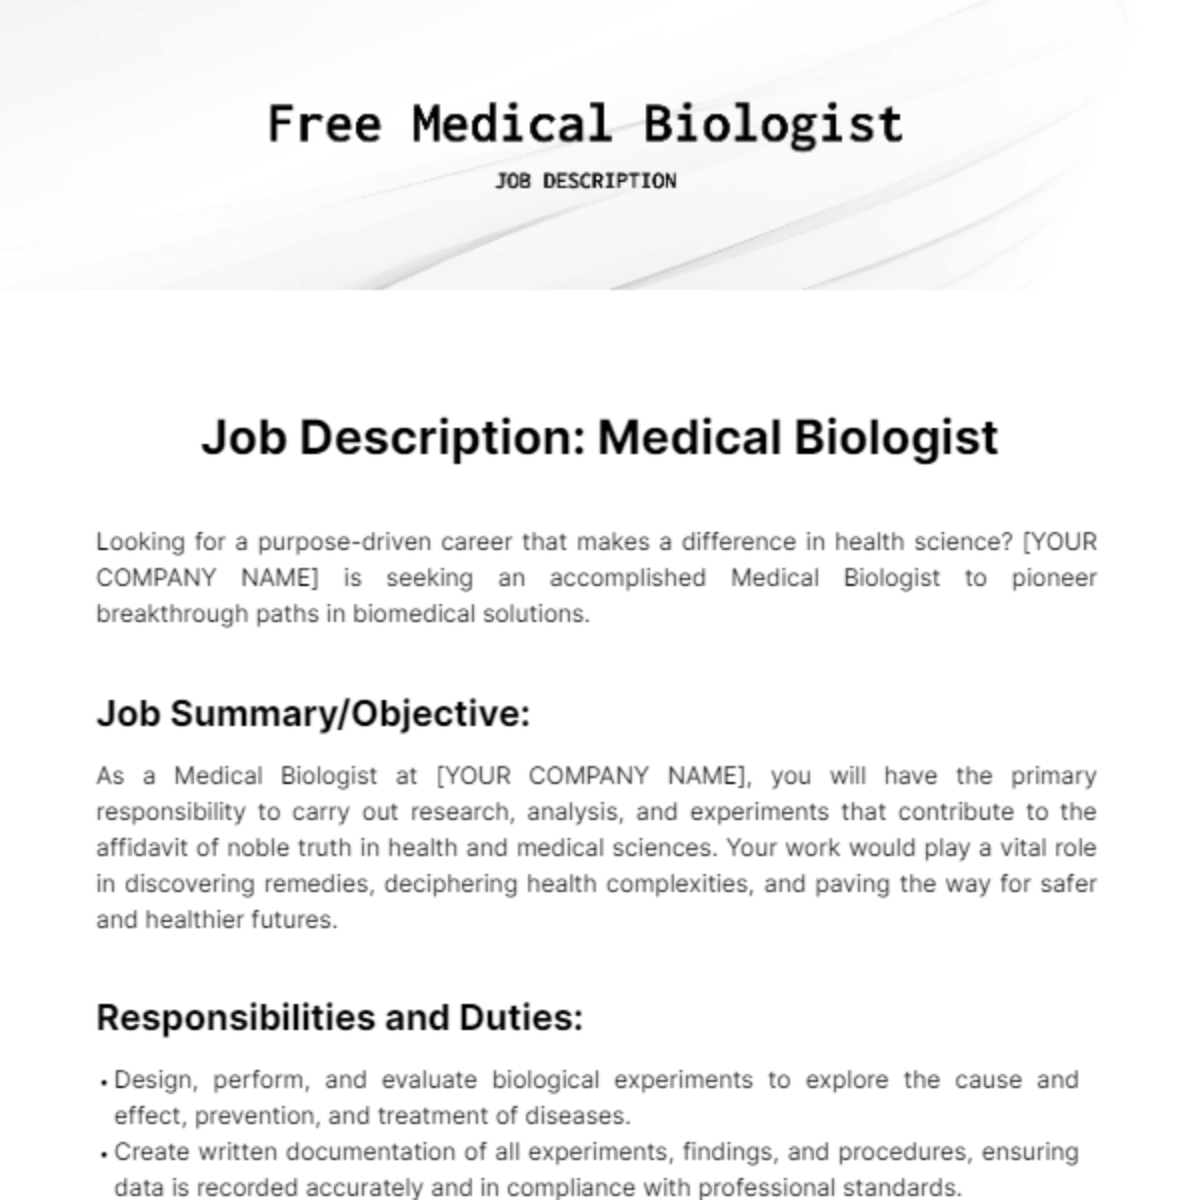 Medical Biologist Job Description Template